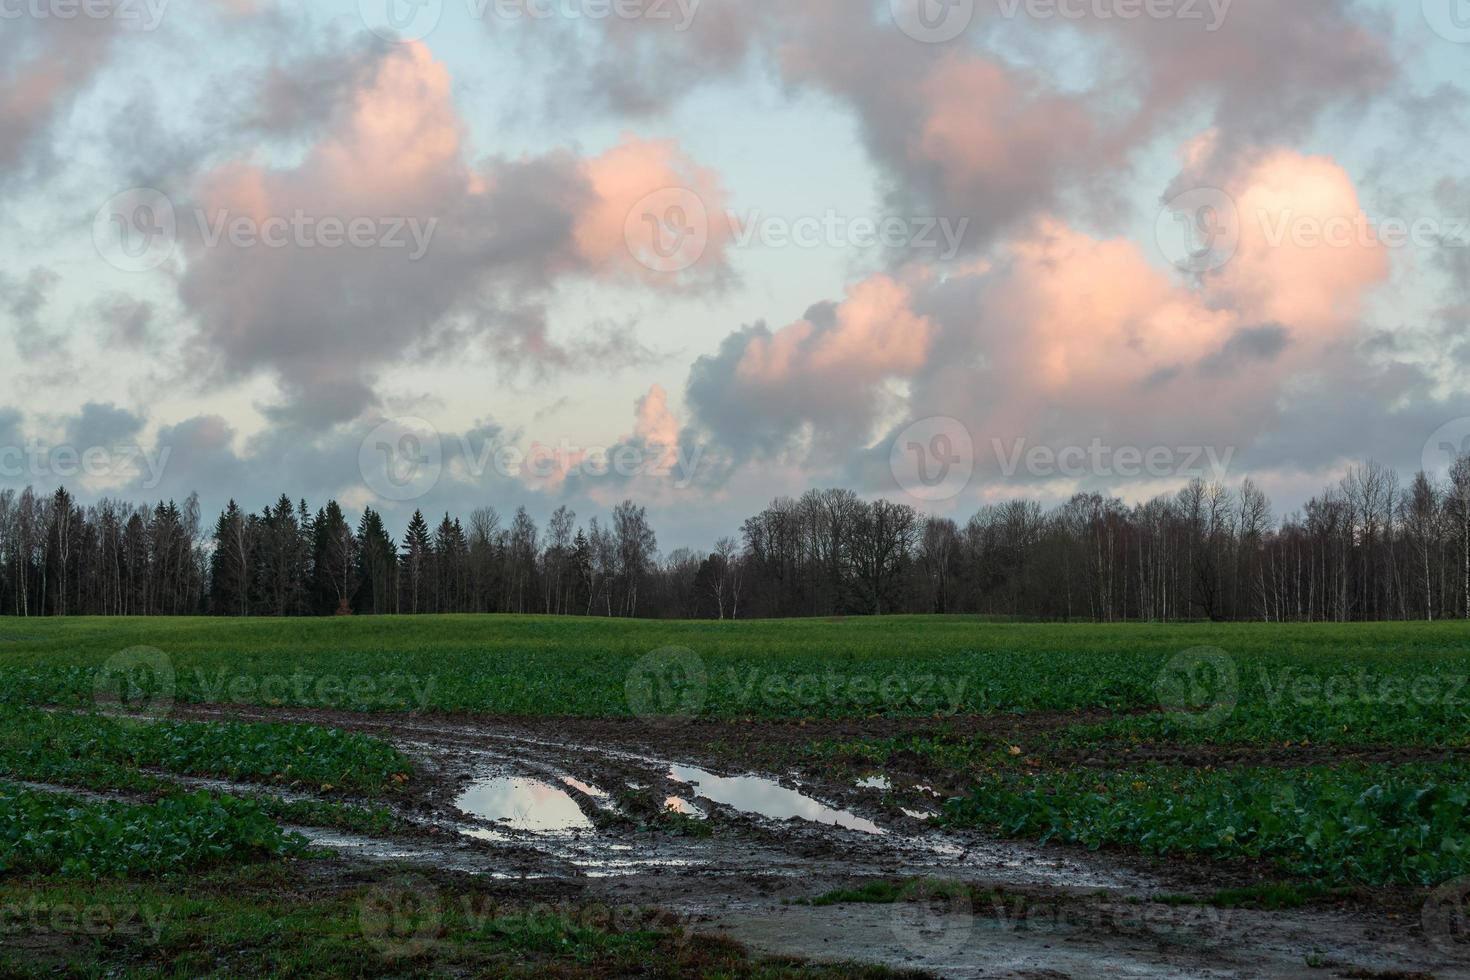 naturlig höst landskap i lettland foto